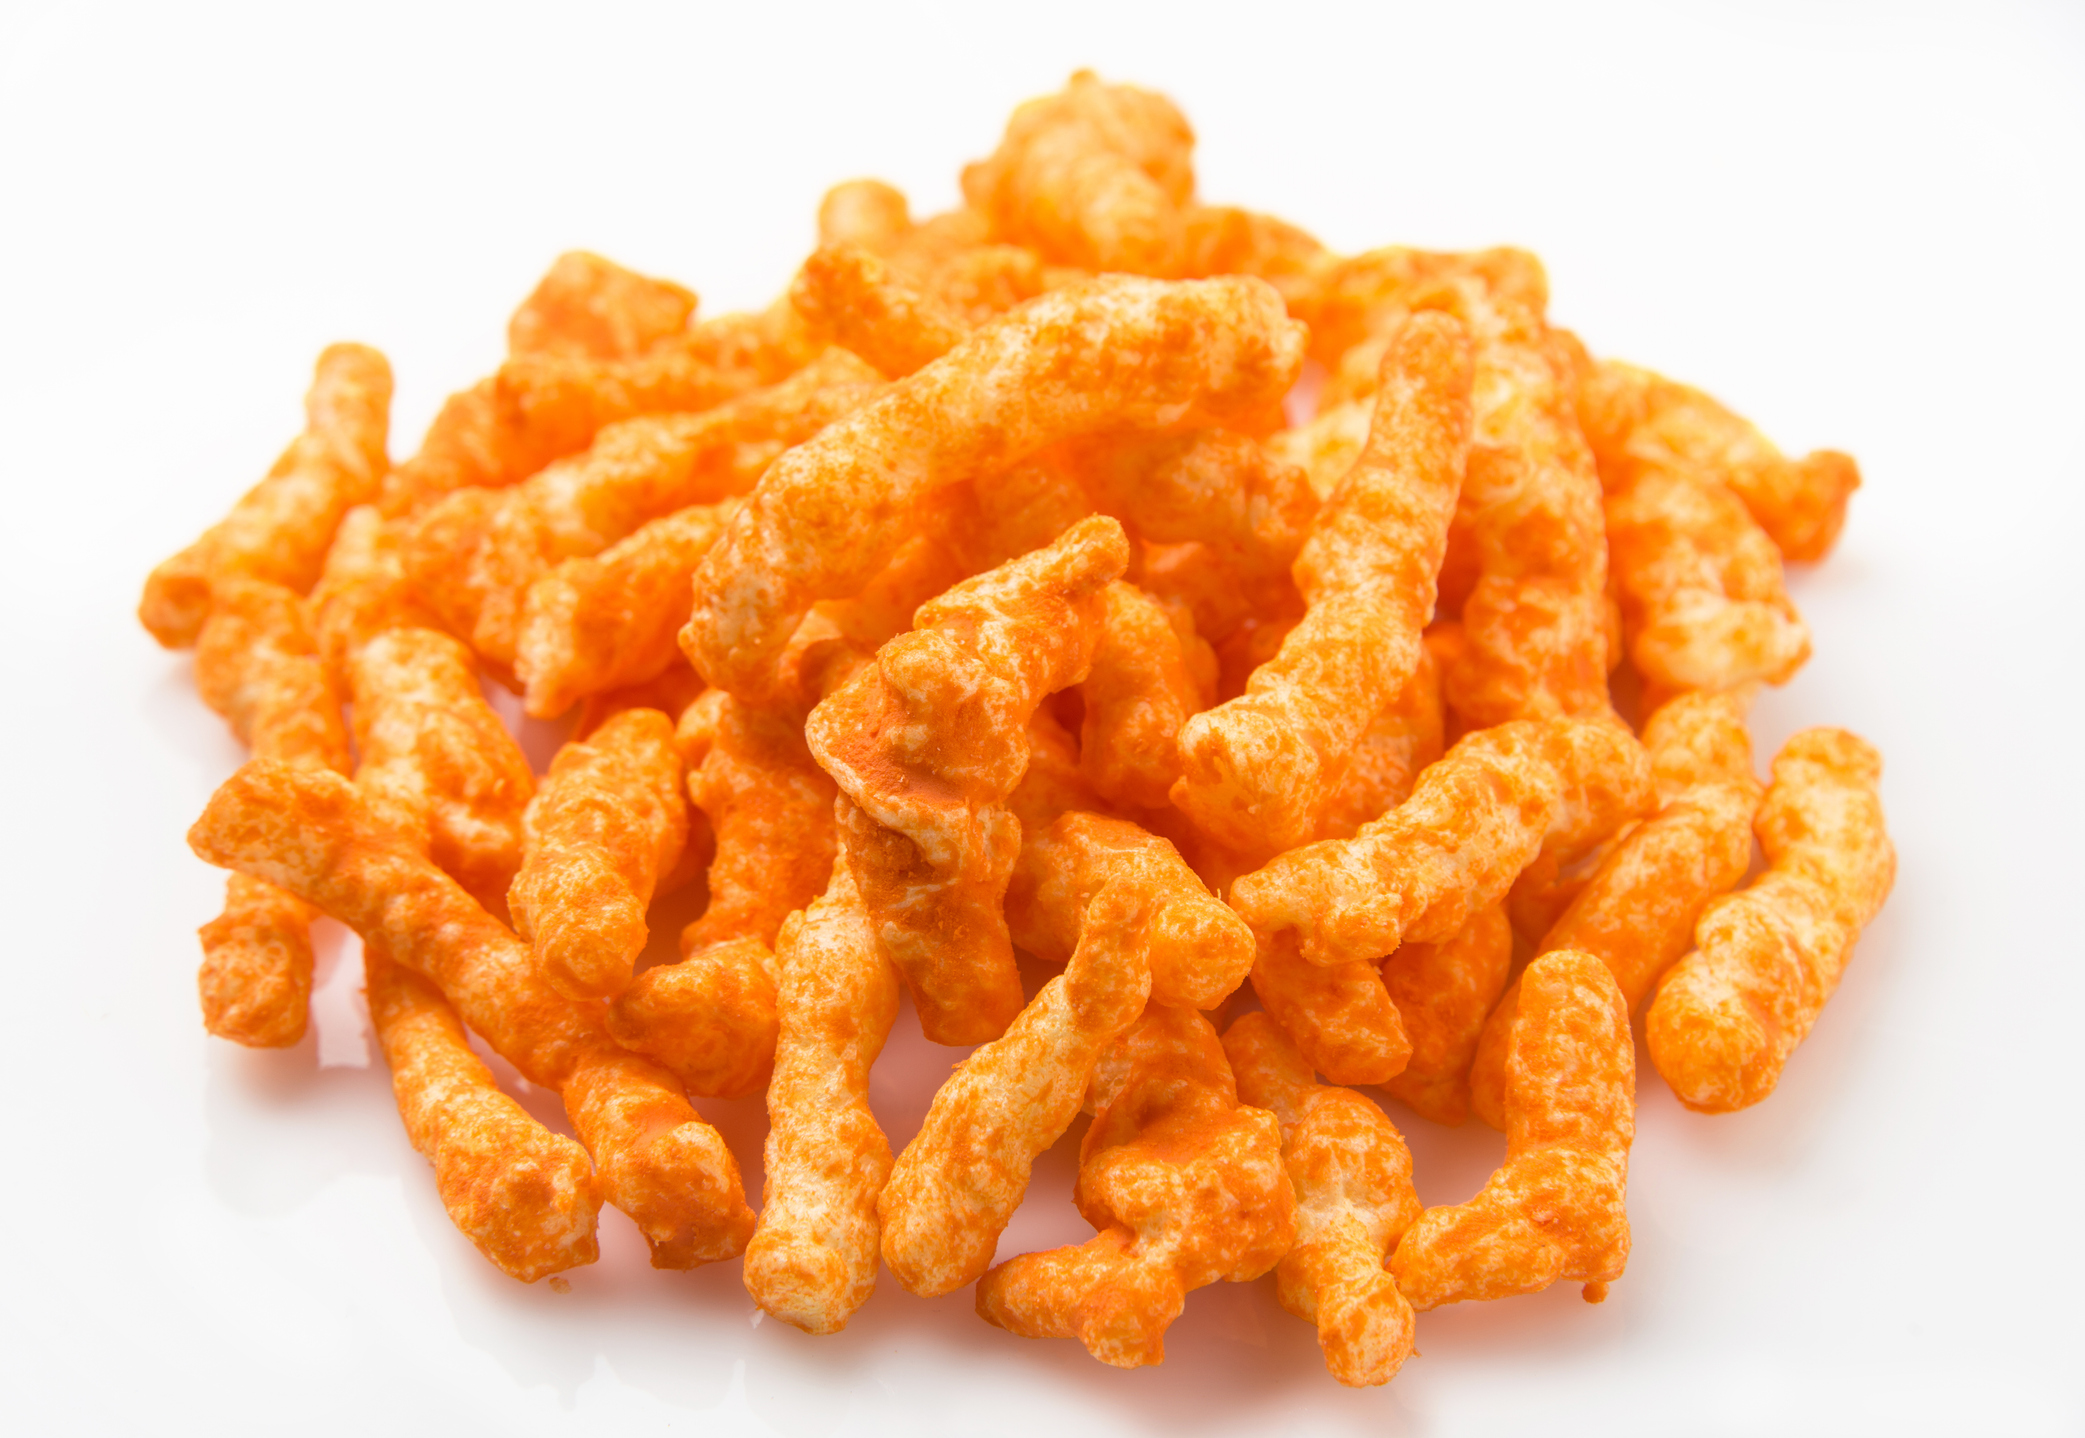 2. Cheetos